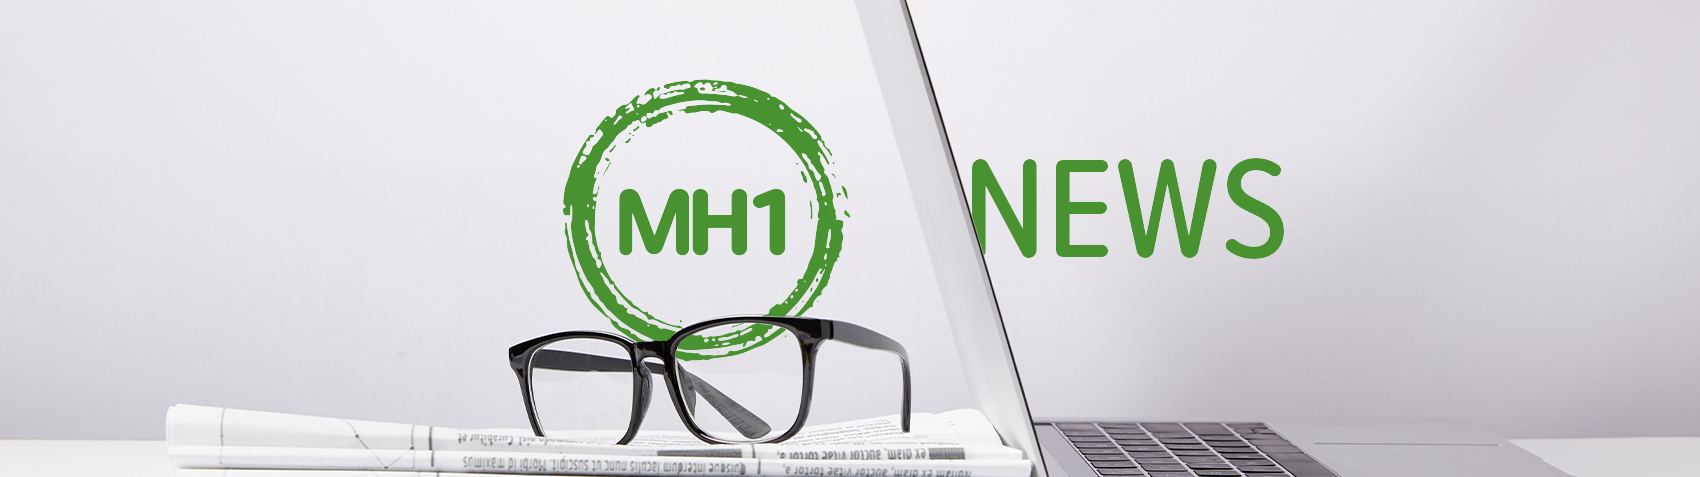 mh1-news